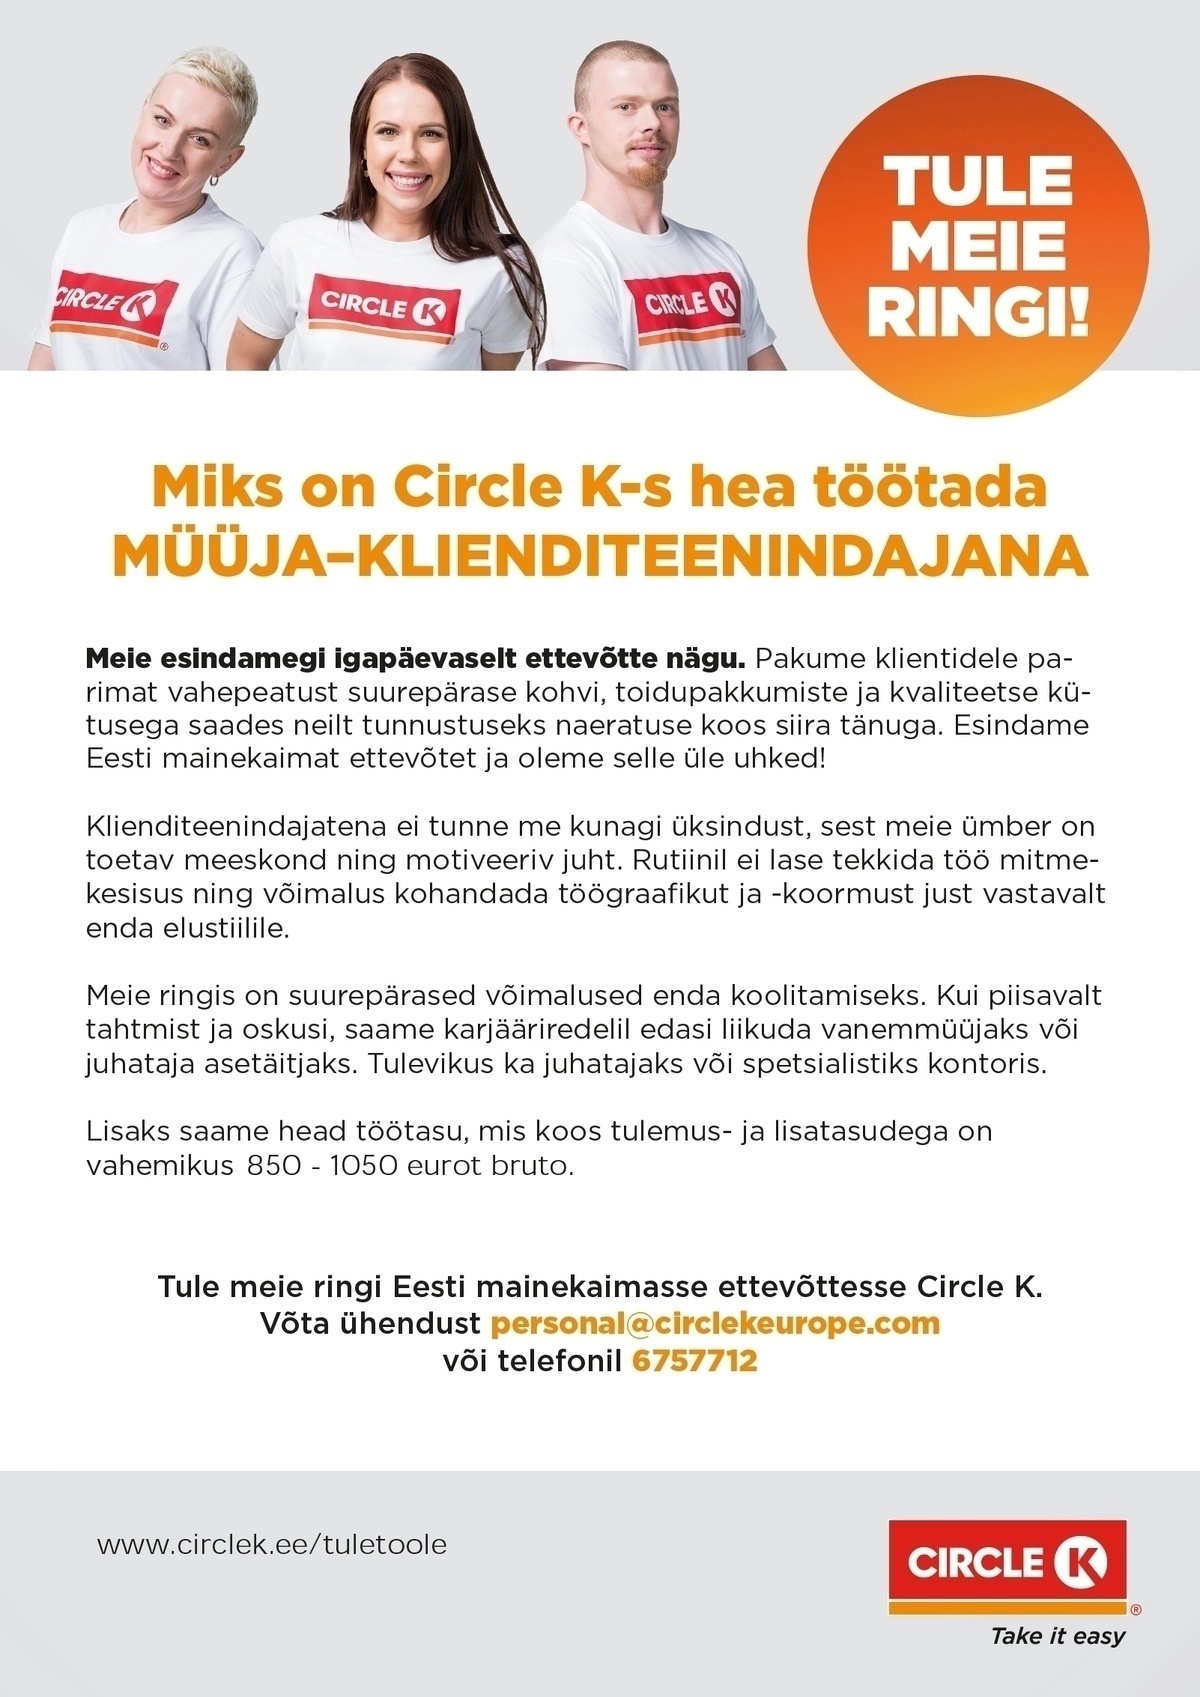 Circle K Eesti AS Müüja-klienditeenindaja Järve ja Nõmme (Järve keskuse kõrval) teenindusjaamadesse